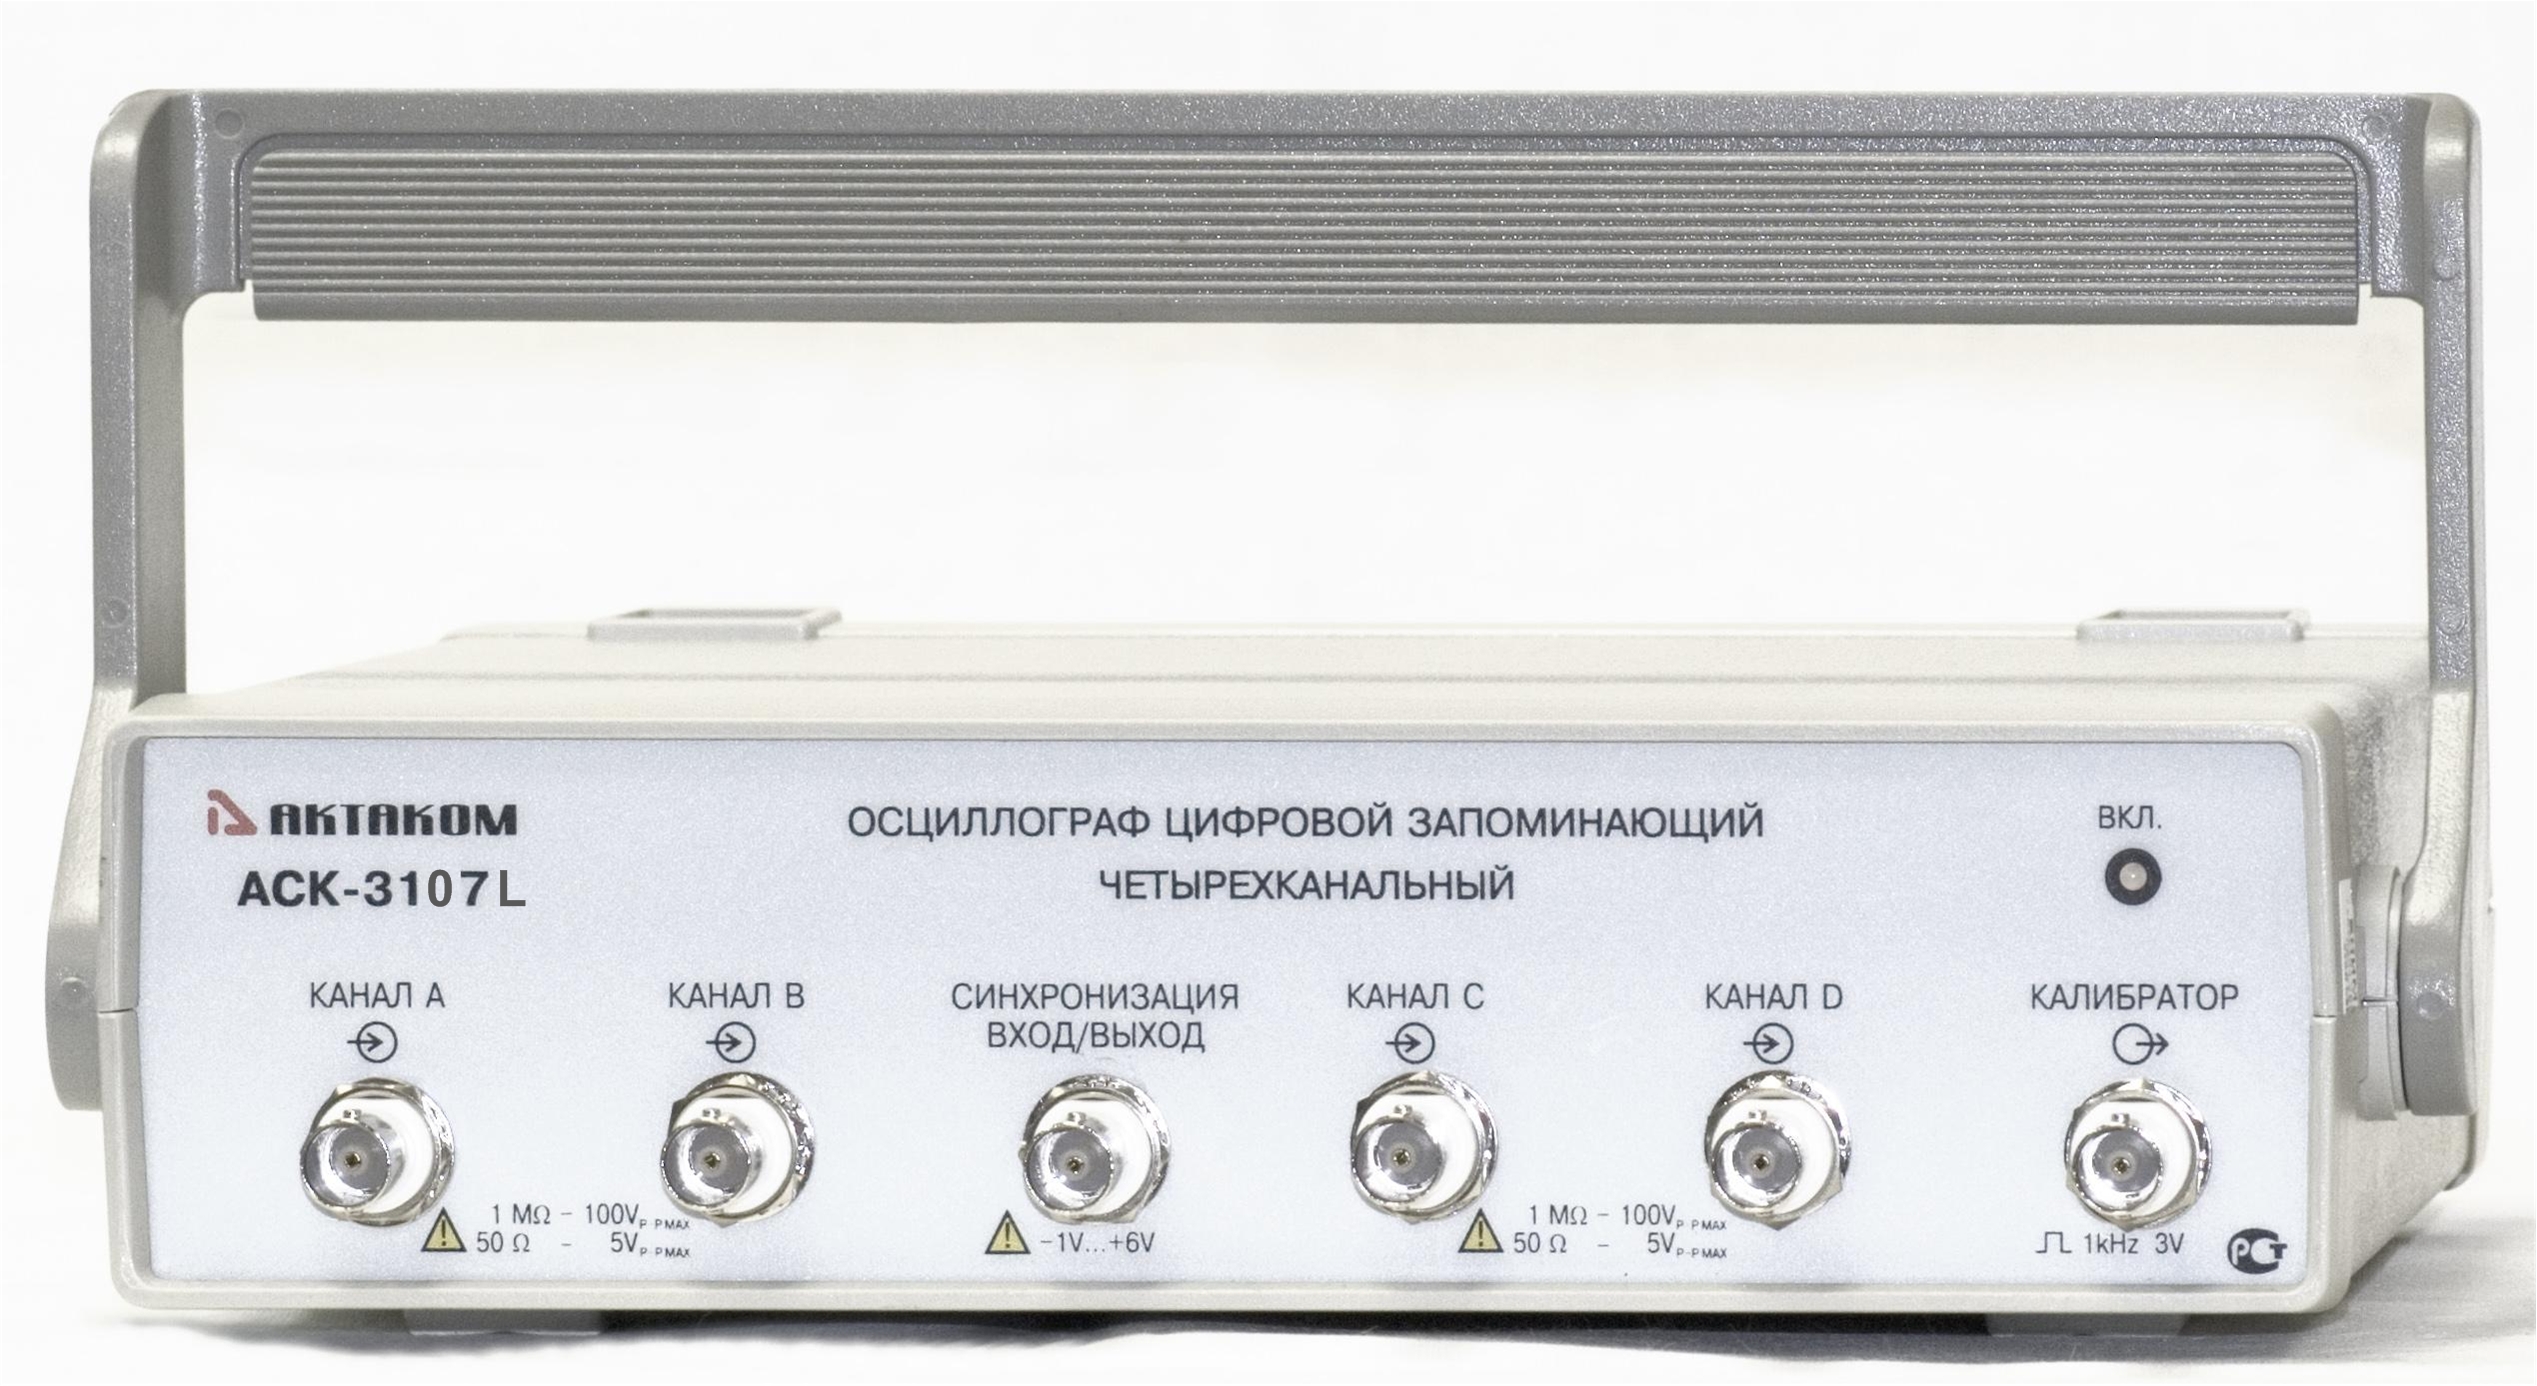 Четырехканальный USB осциллограф - приставка АСК-3107 L - вид спереди